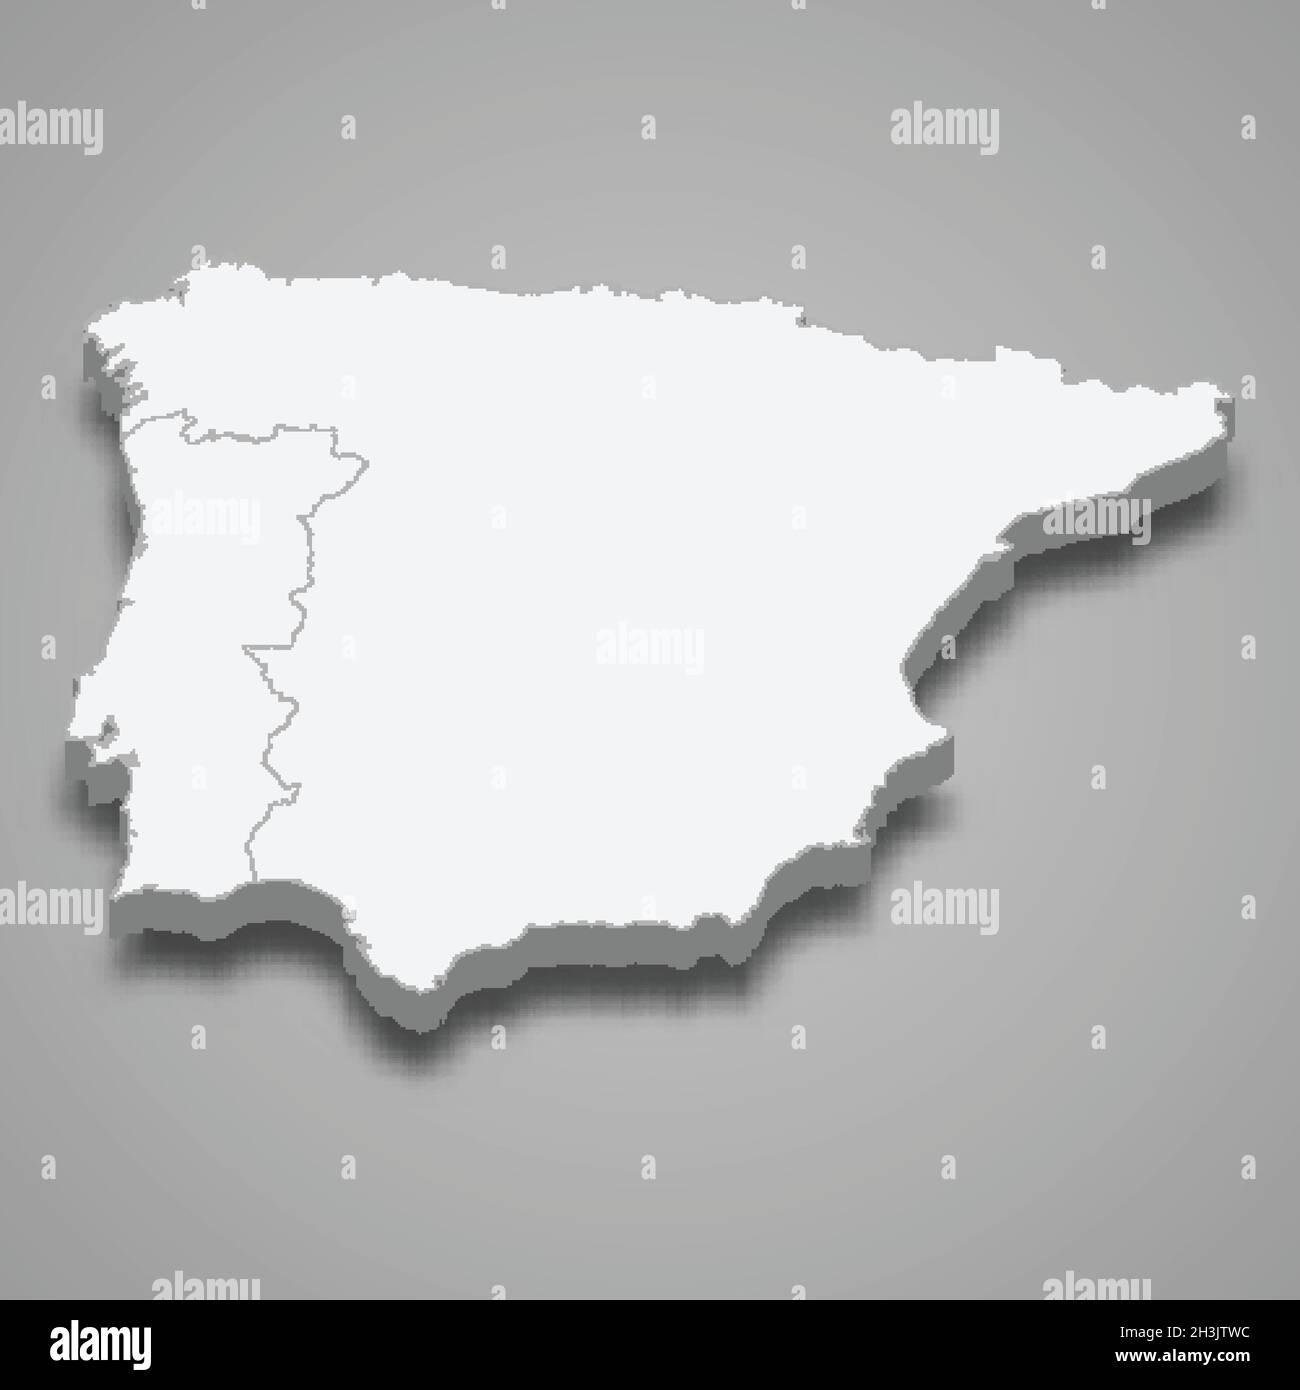 Mappa isometrica 3d della regione della penisola iberica, isolata con illustrazione vettoriale ombra Illustrazione Vettoriale